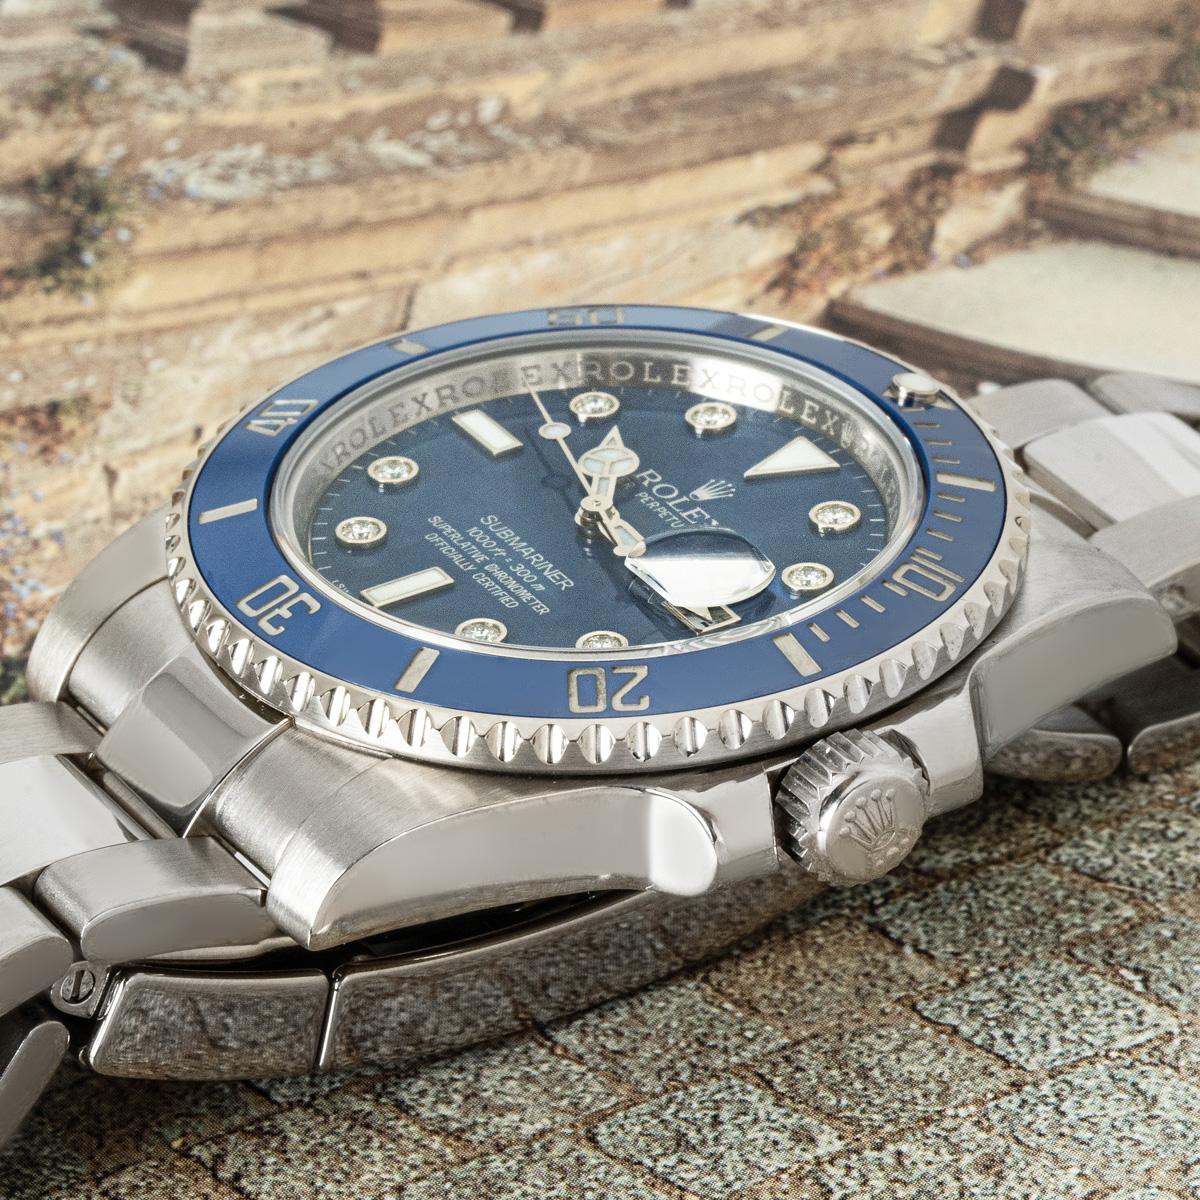 Une Submariner Date Smurf en or blanc de 40 mm de Rolex. Elle présente un rare cadran bleu avec des index sertis de diamants, complété par une lunette tournante unidirectionnelle en céramique bleue avec des graduations de 60 minutes. Le bracelet